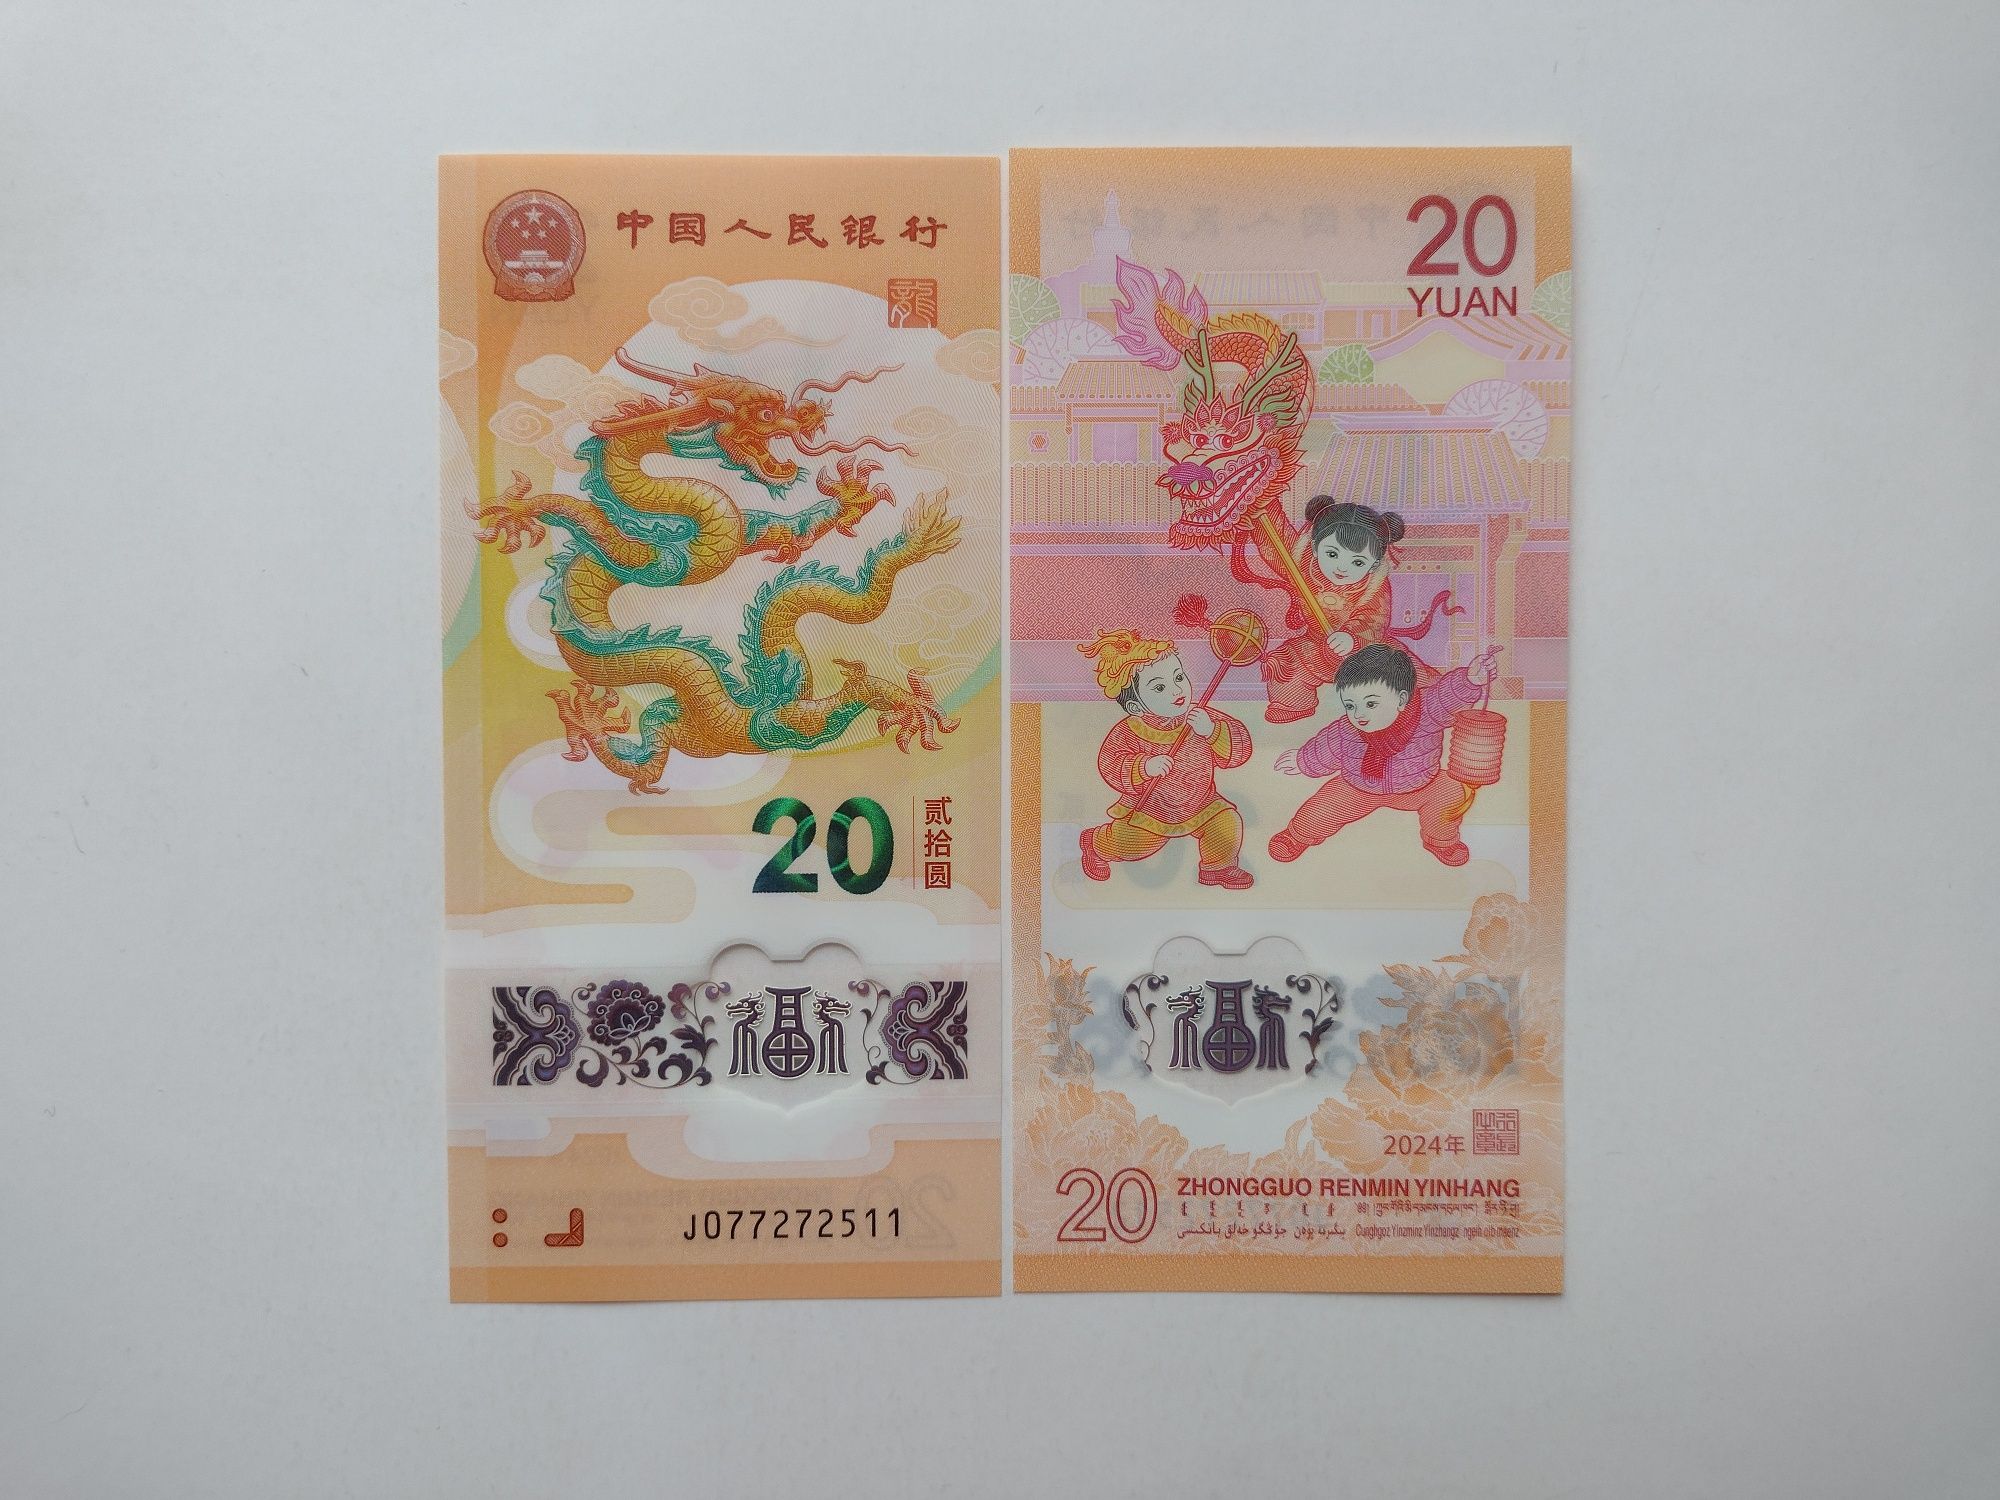 Продам полимерные банкноты со всего мира